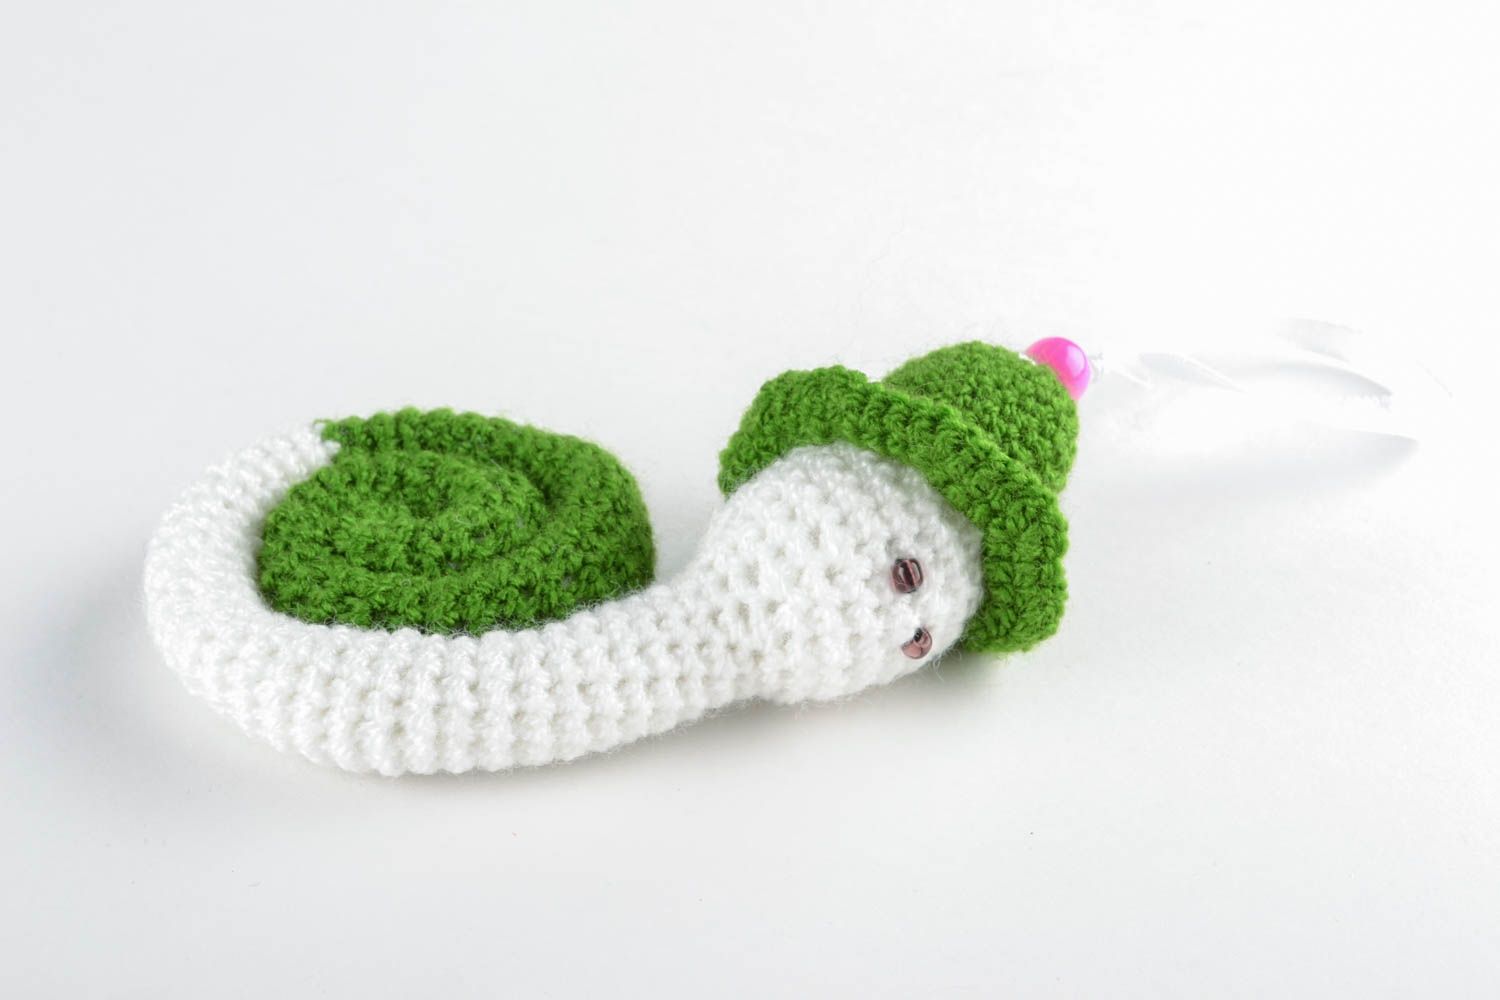 Handmade crochet toy snail for children photo 1